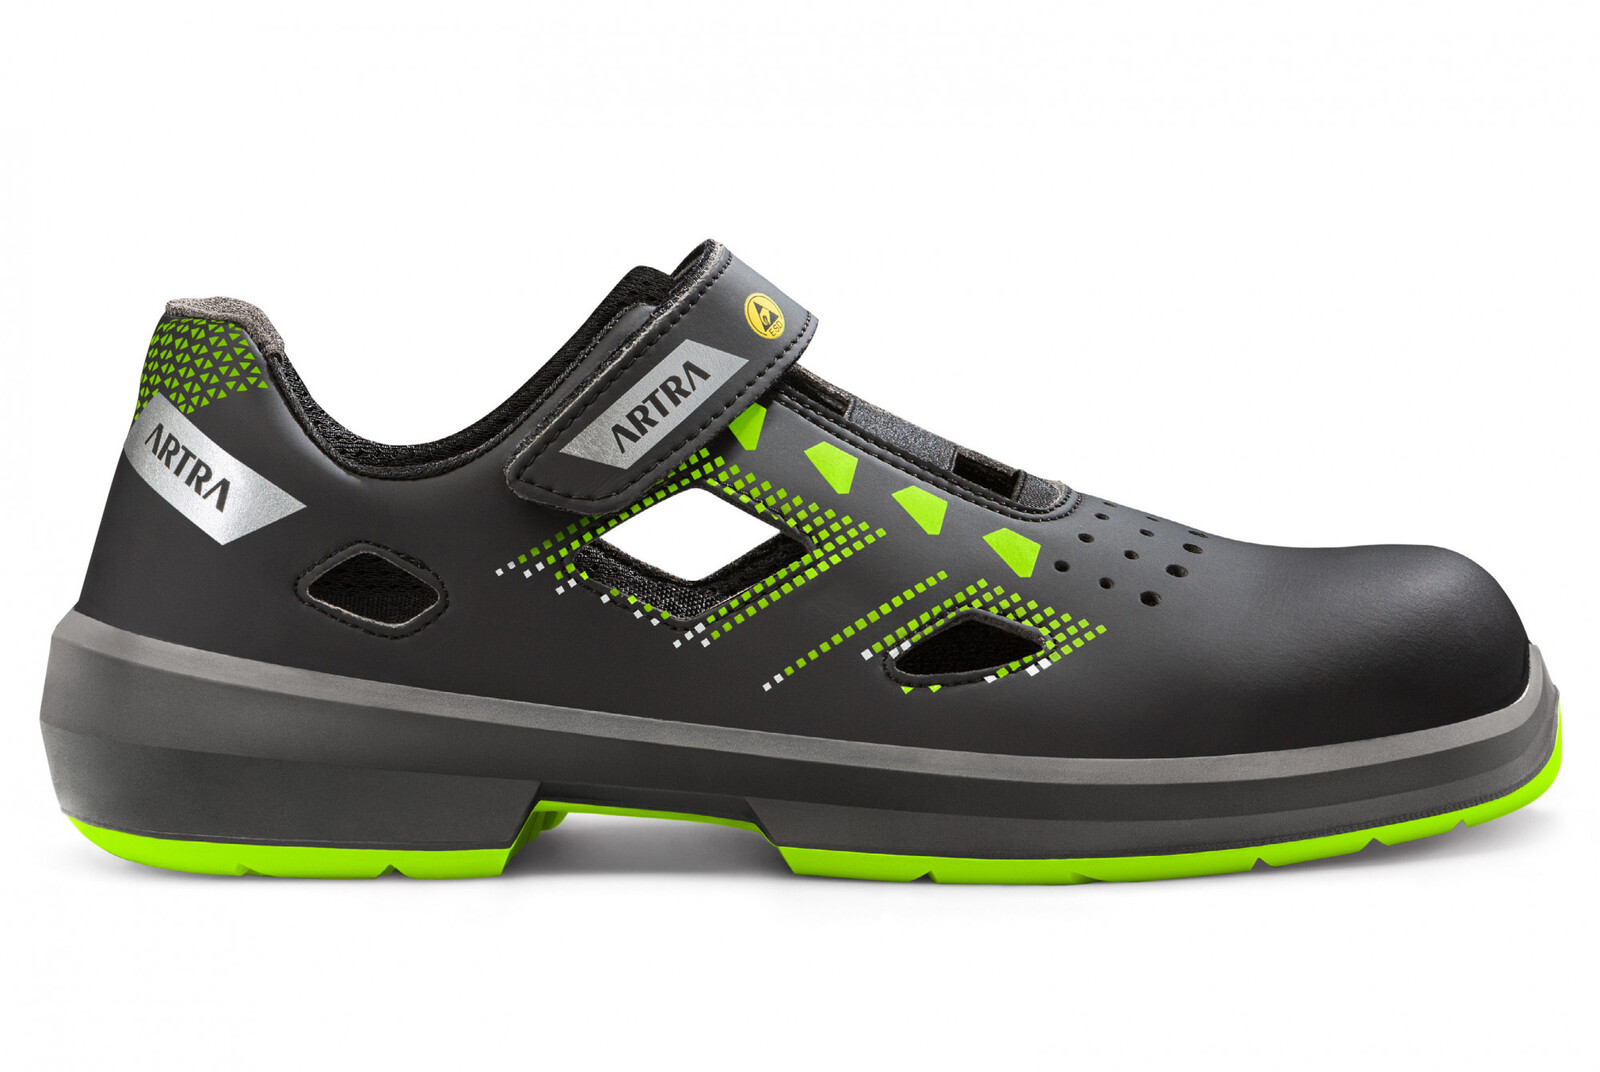 Bezpečnostné sandále Artra Arzo 805 678080 S1P SRC ESD MF - veľkosť: 39, farba: čierna/zelená